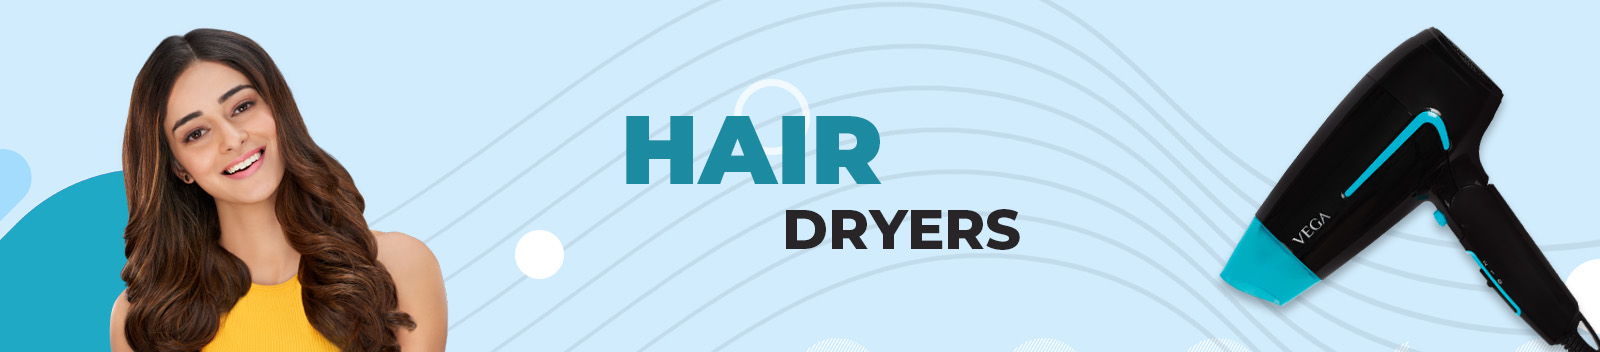 Hair Dryer - Buy Hair Dryer Online at Low Price In India | VEGA